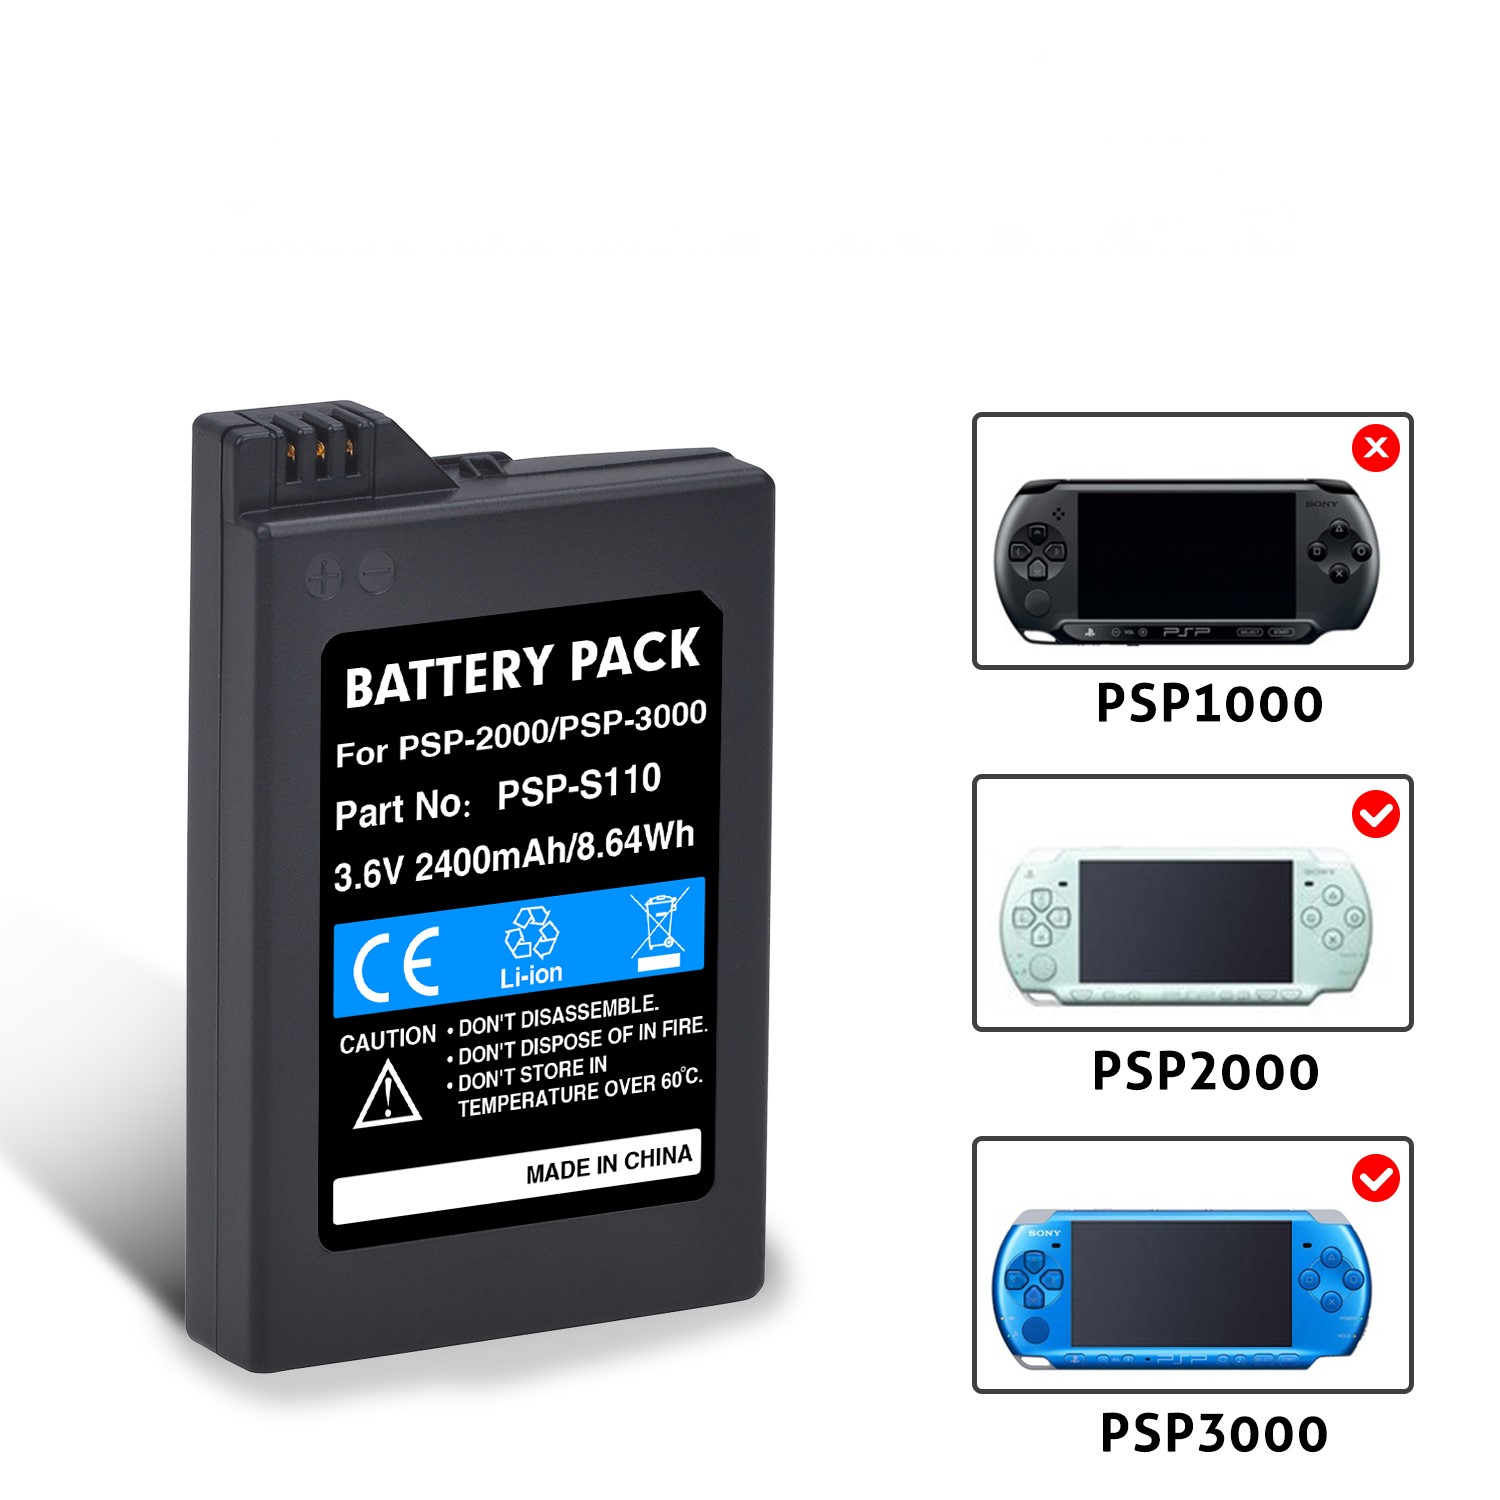 PSP-2000 2400mAh PSP-3000 SP-S110 Pin cho Sony psp2000 PSP3000 PlayStation